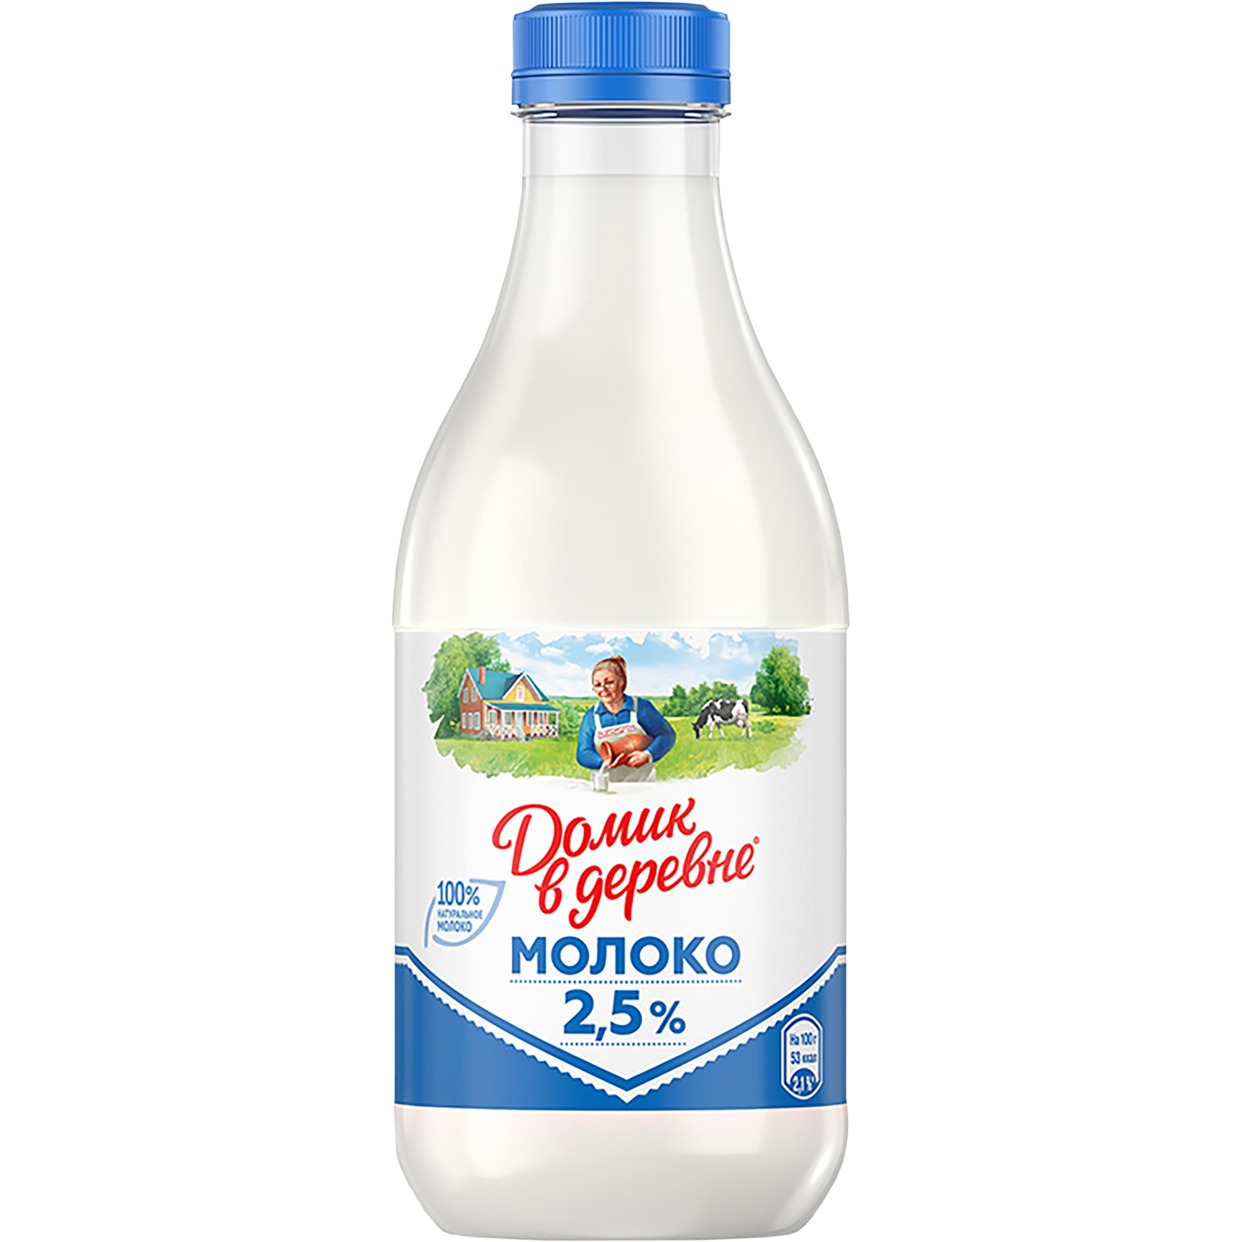 Молоко Домик в деревне пастеризованное 2,5% 930 мл по акции в Пятерочке